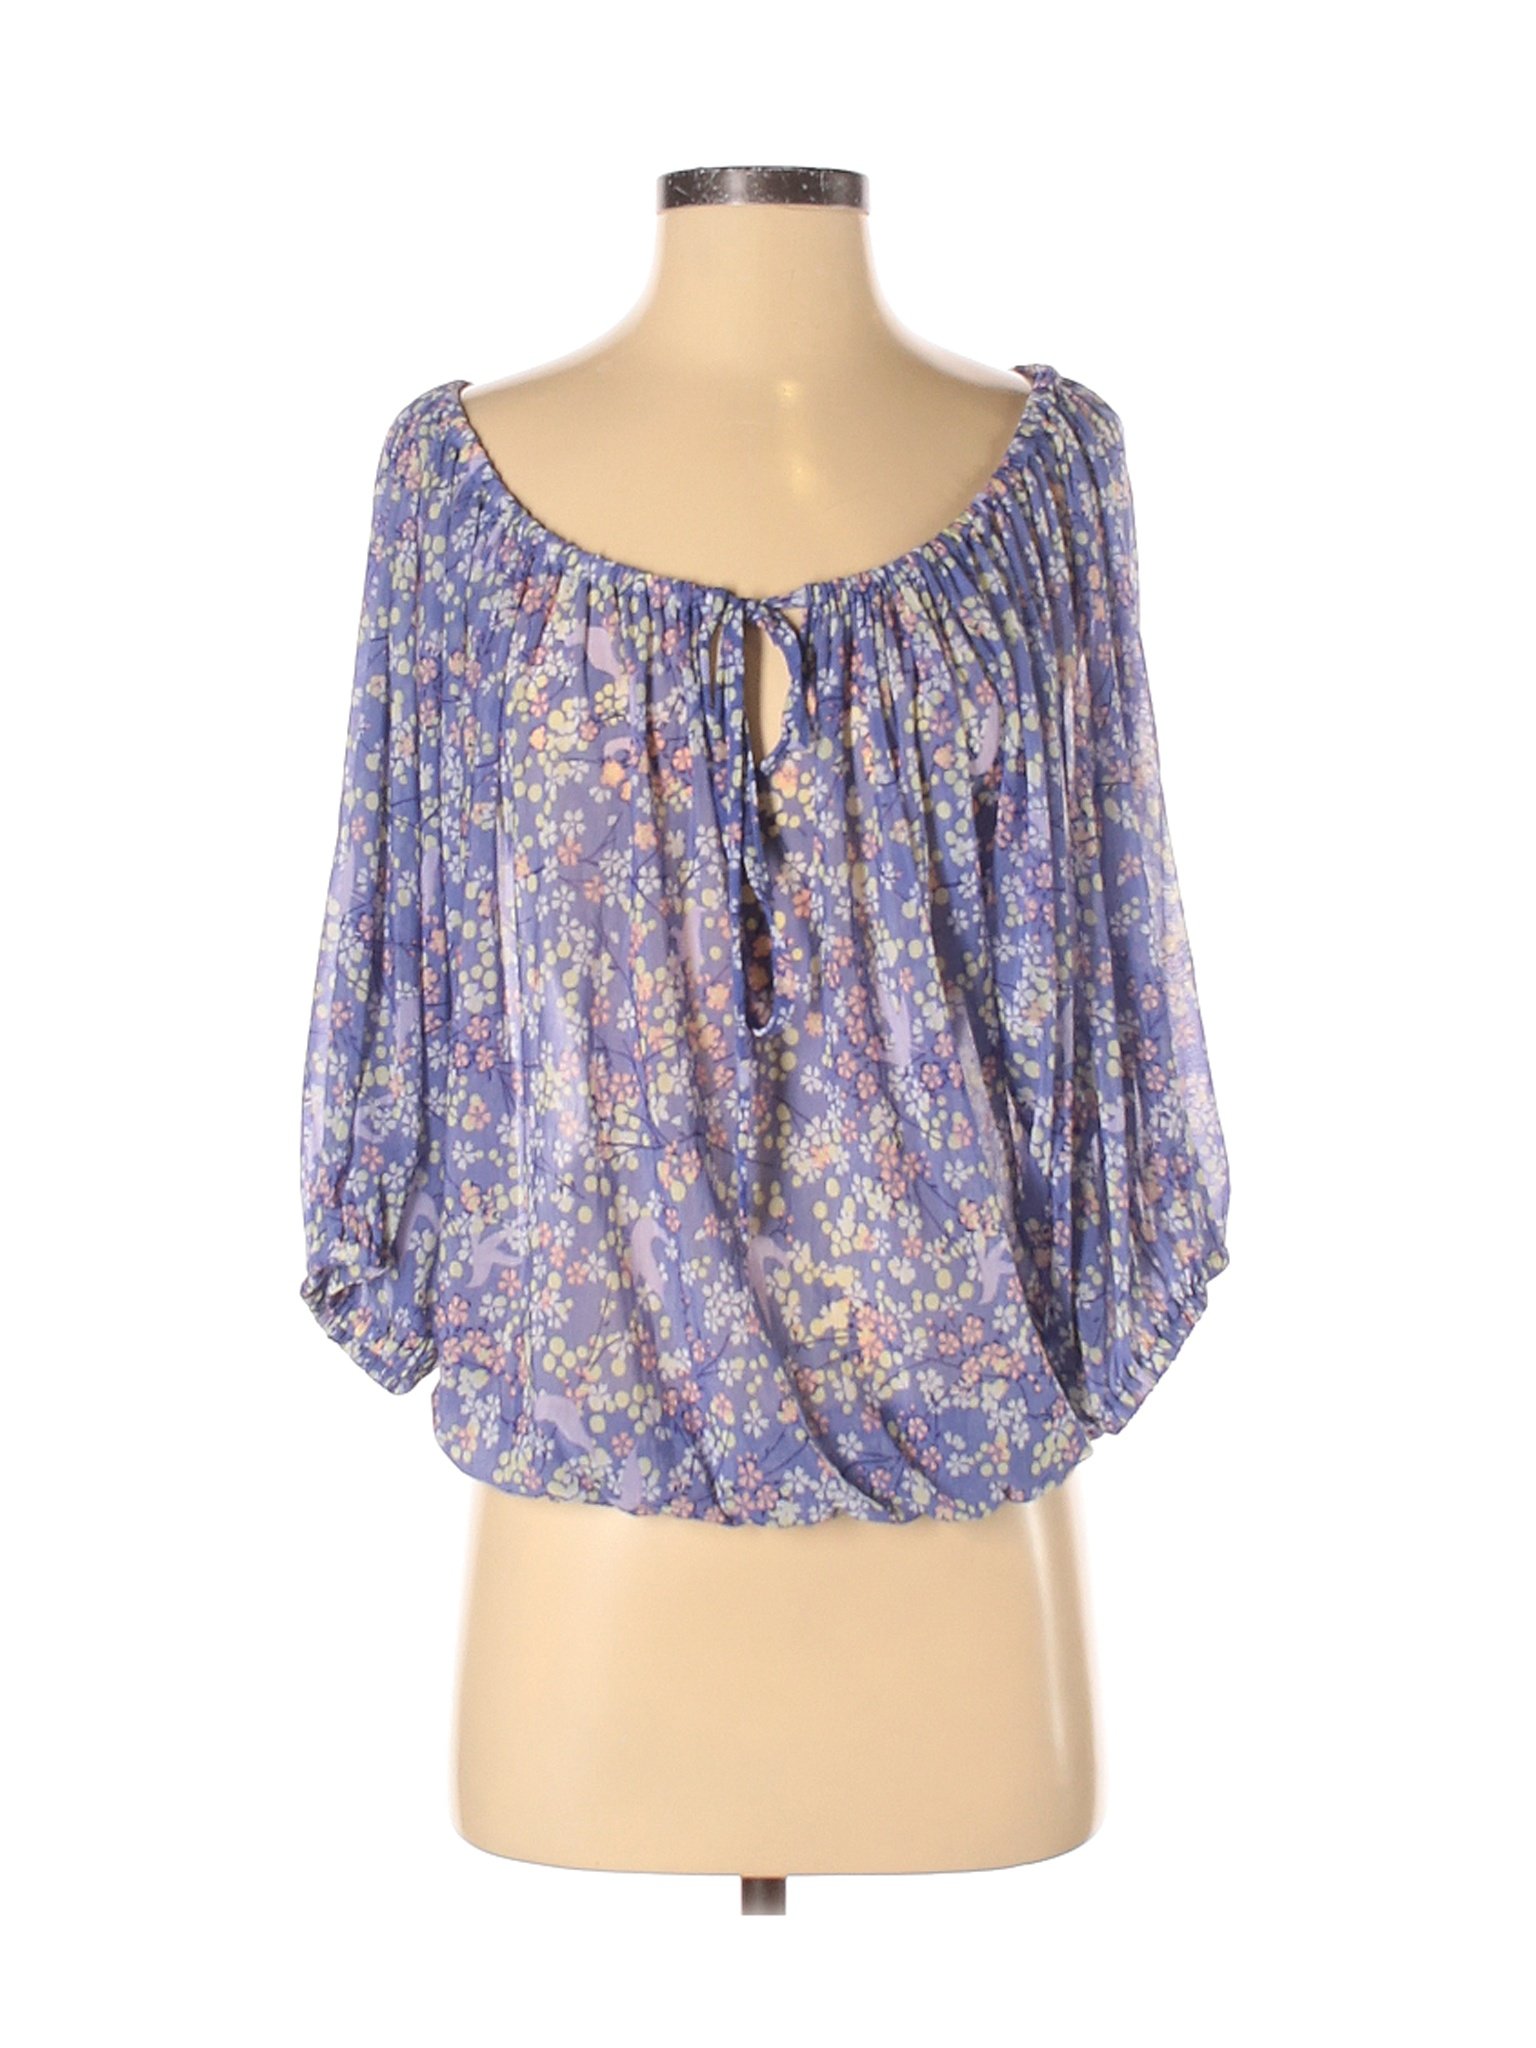 H&M Women Purple Long Sleeve Top XS | eBay